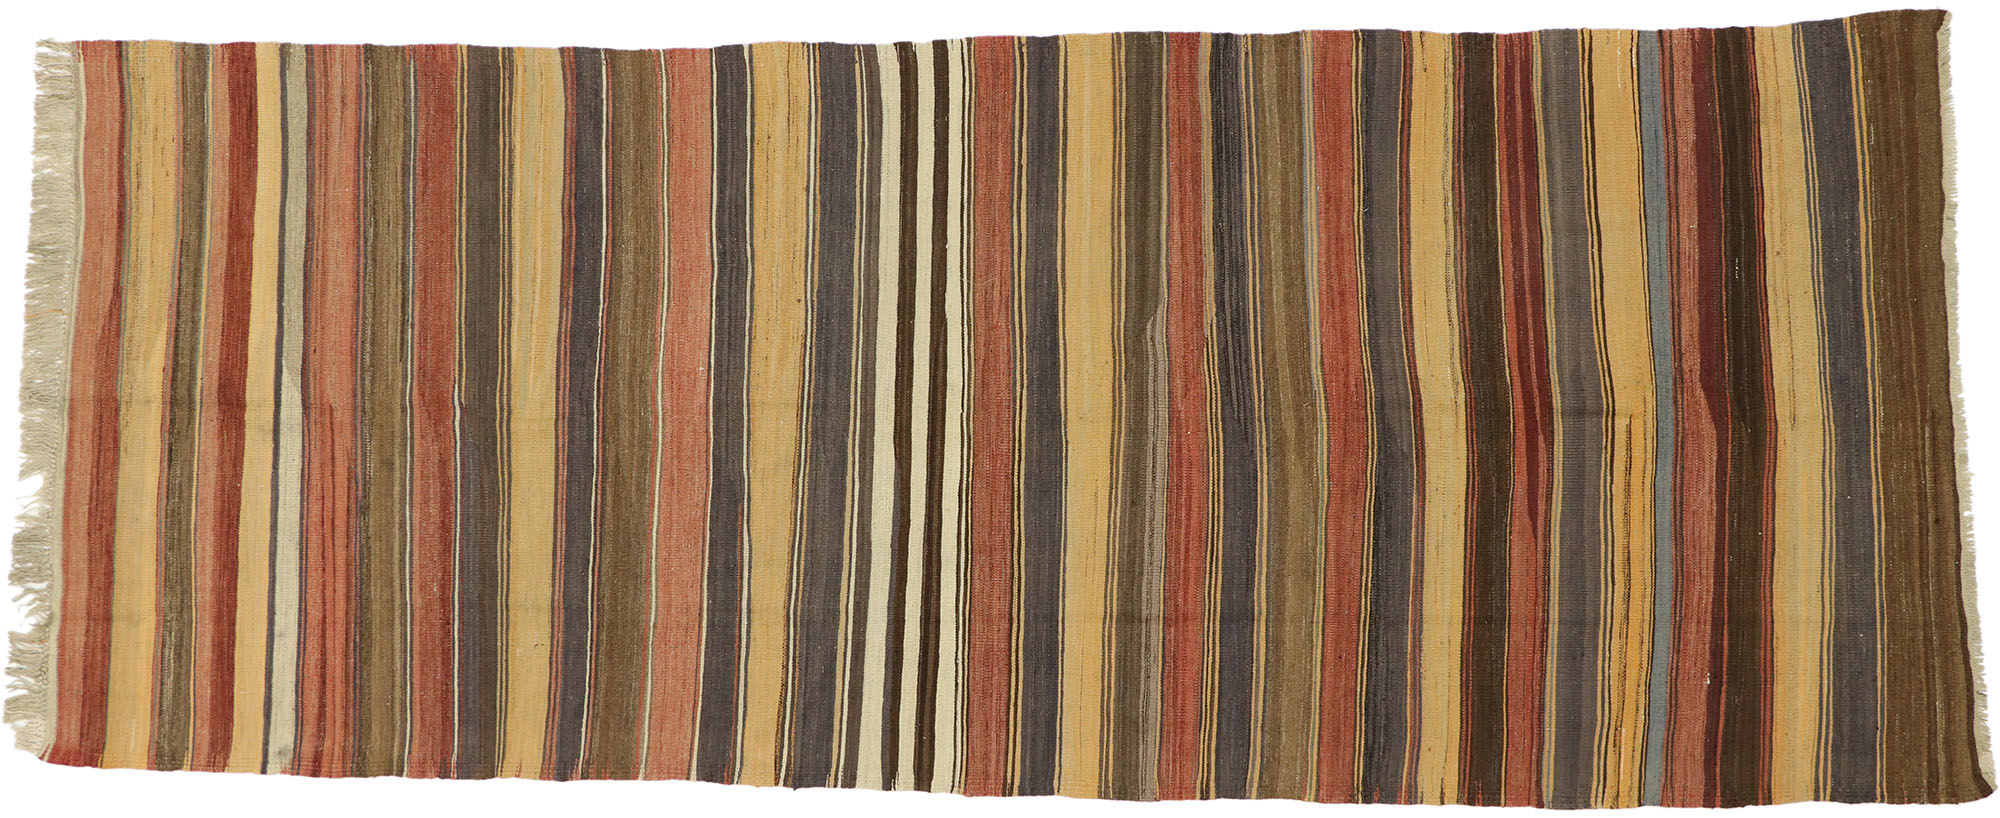 striped kilim rug turkish kilim 5.4 x 5.1 ft rustic decor area kilim rug embroidered kilim rug vintage kilim rugs floor kilim rug  Cod296